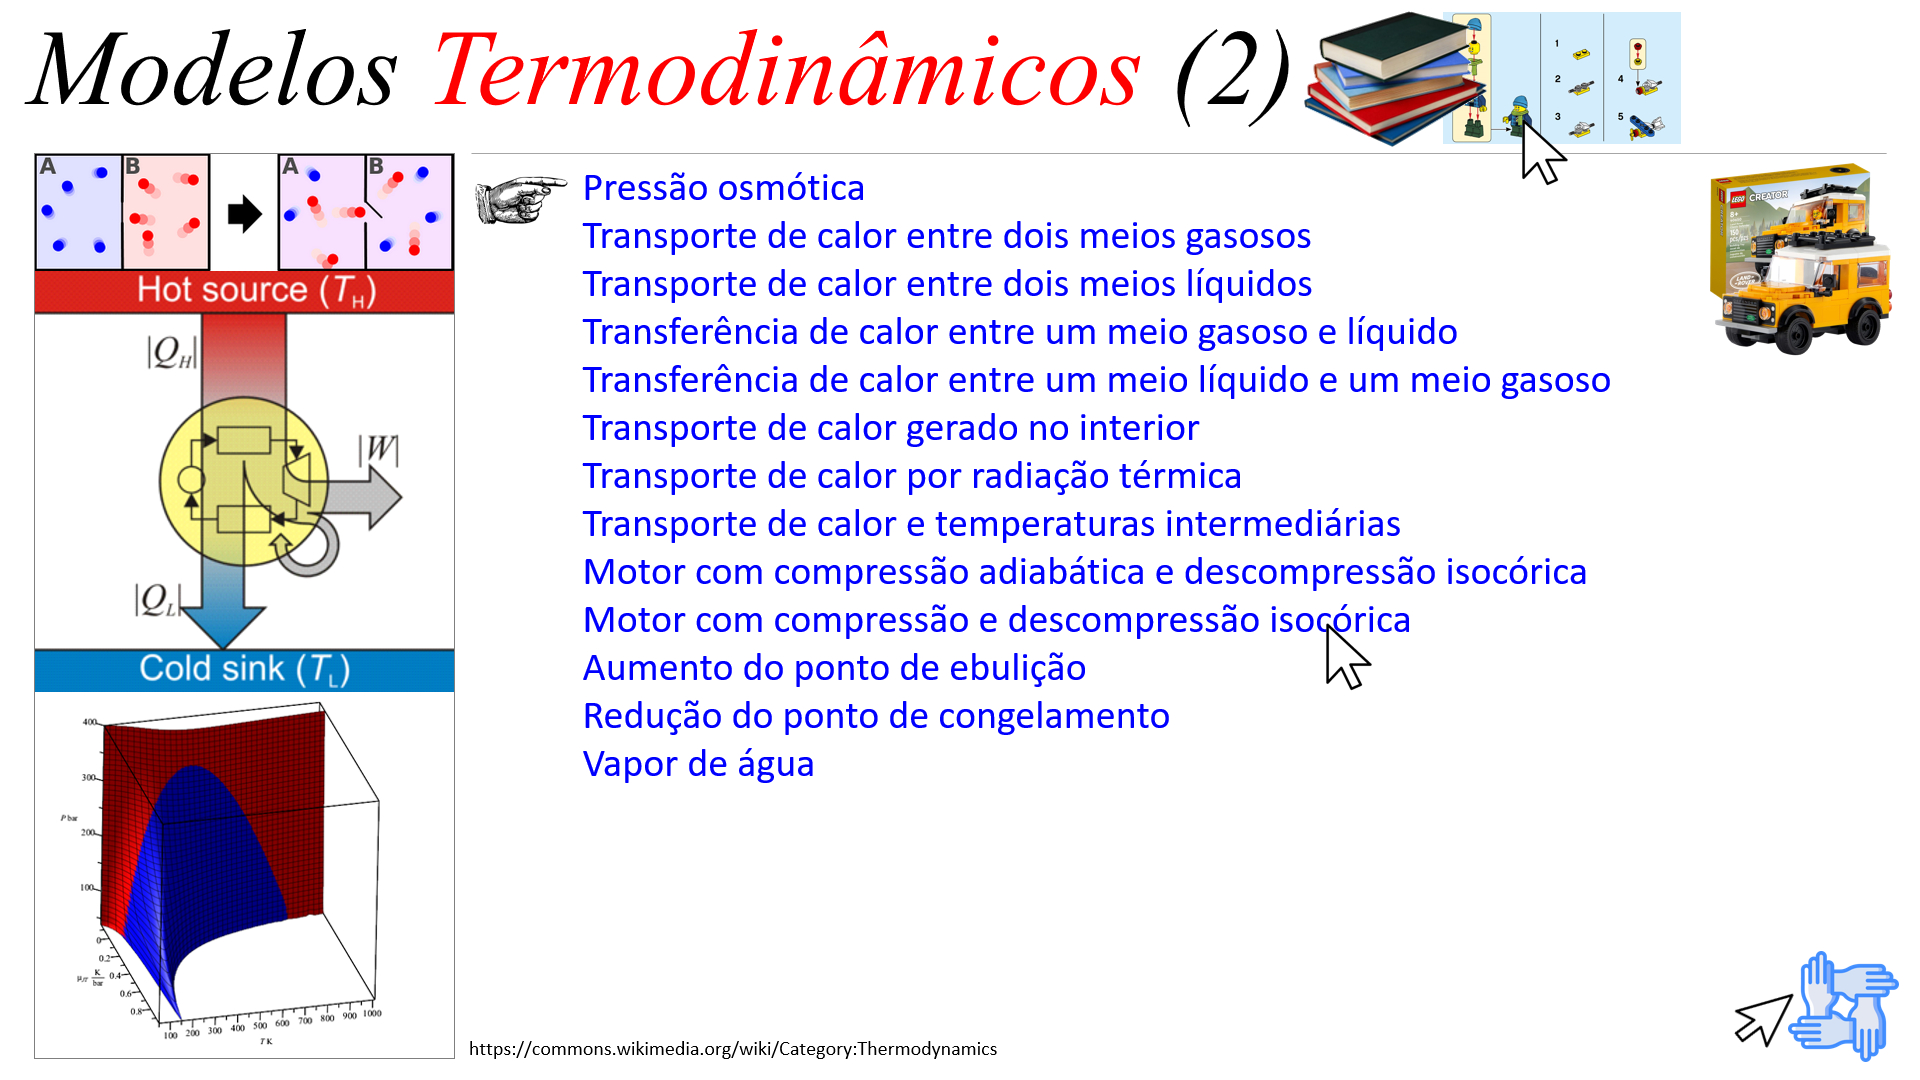 Modelos Termodinâmicos (2)